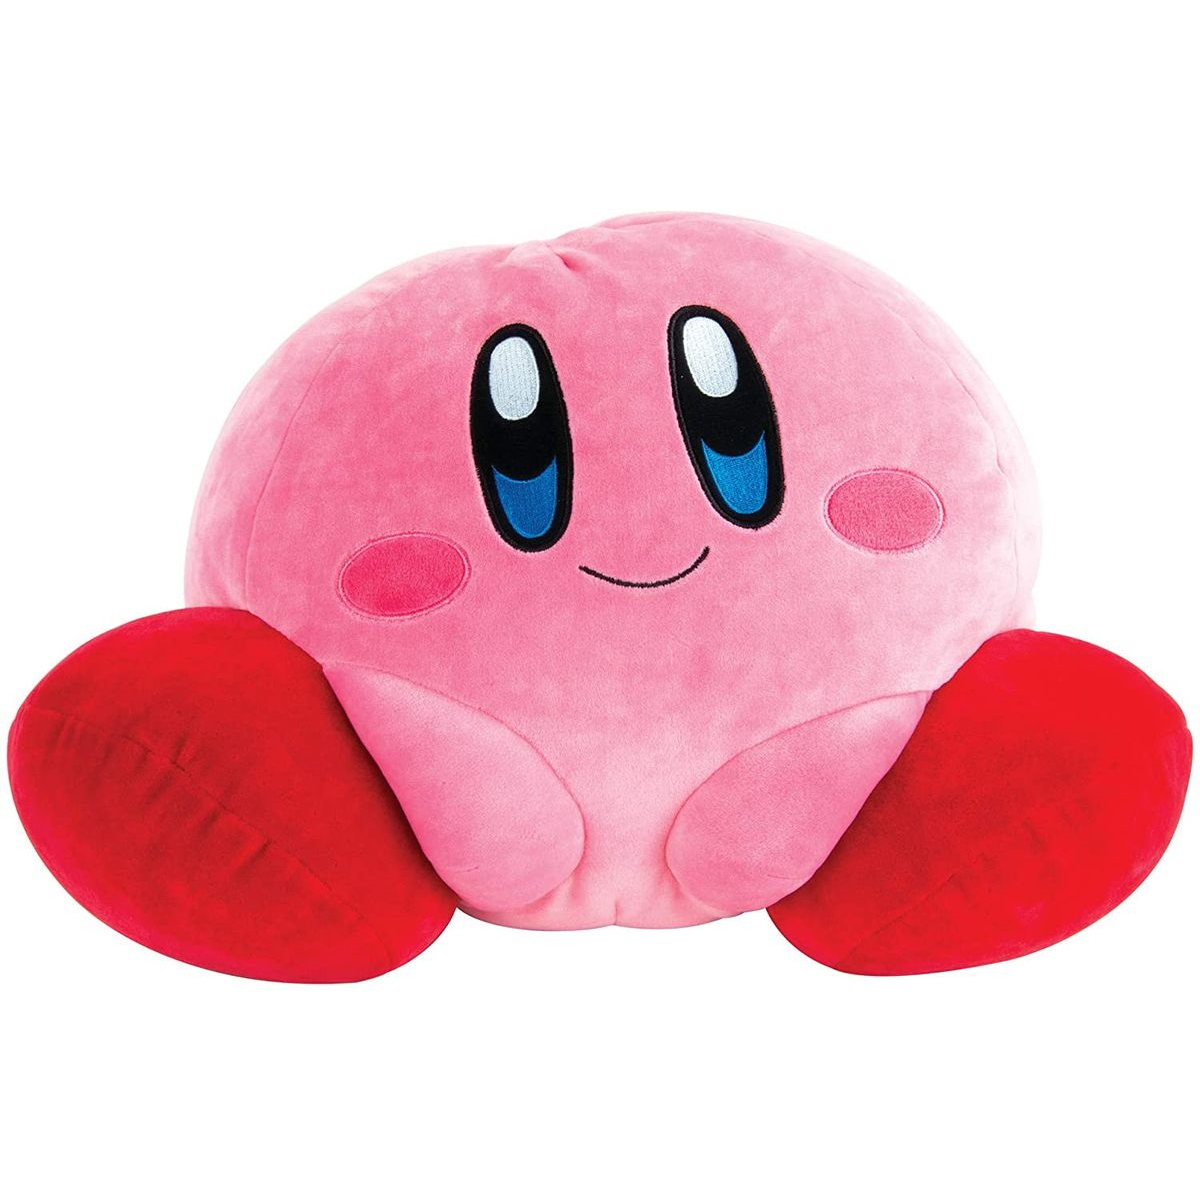 Plüschfigur Kirby